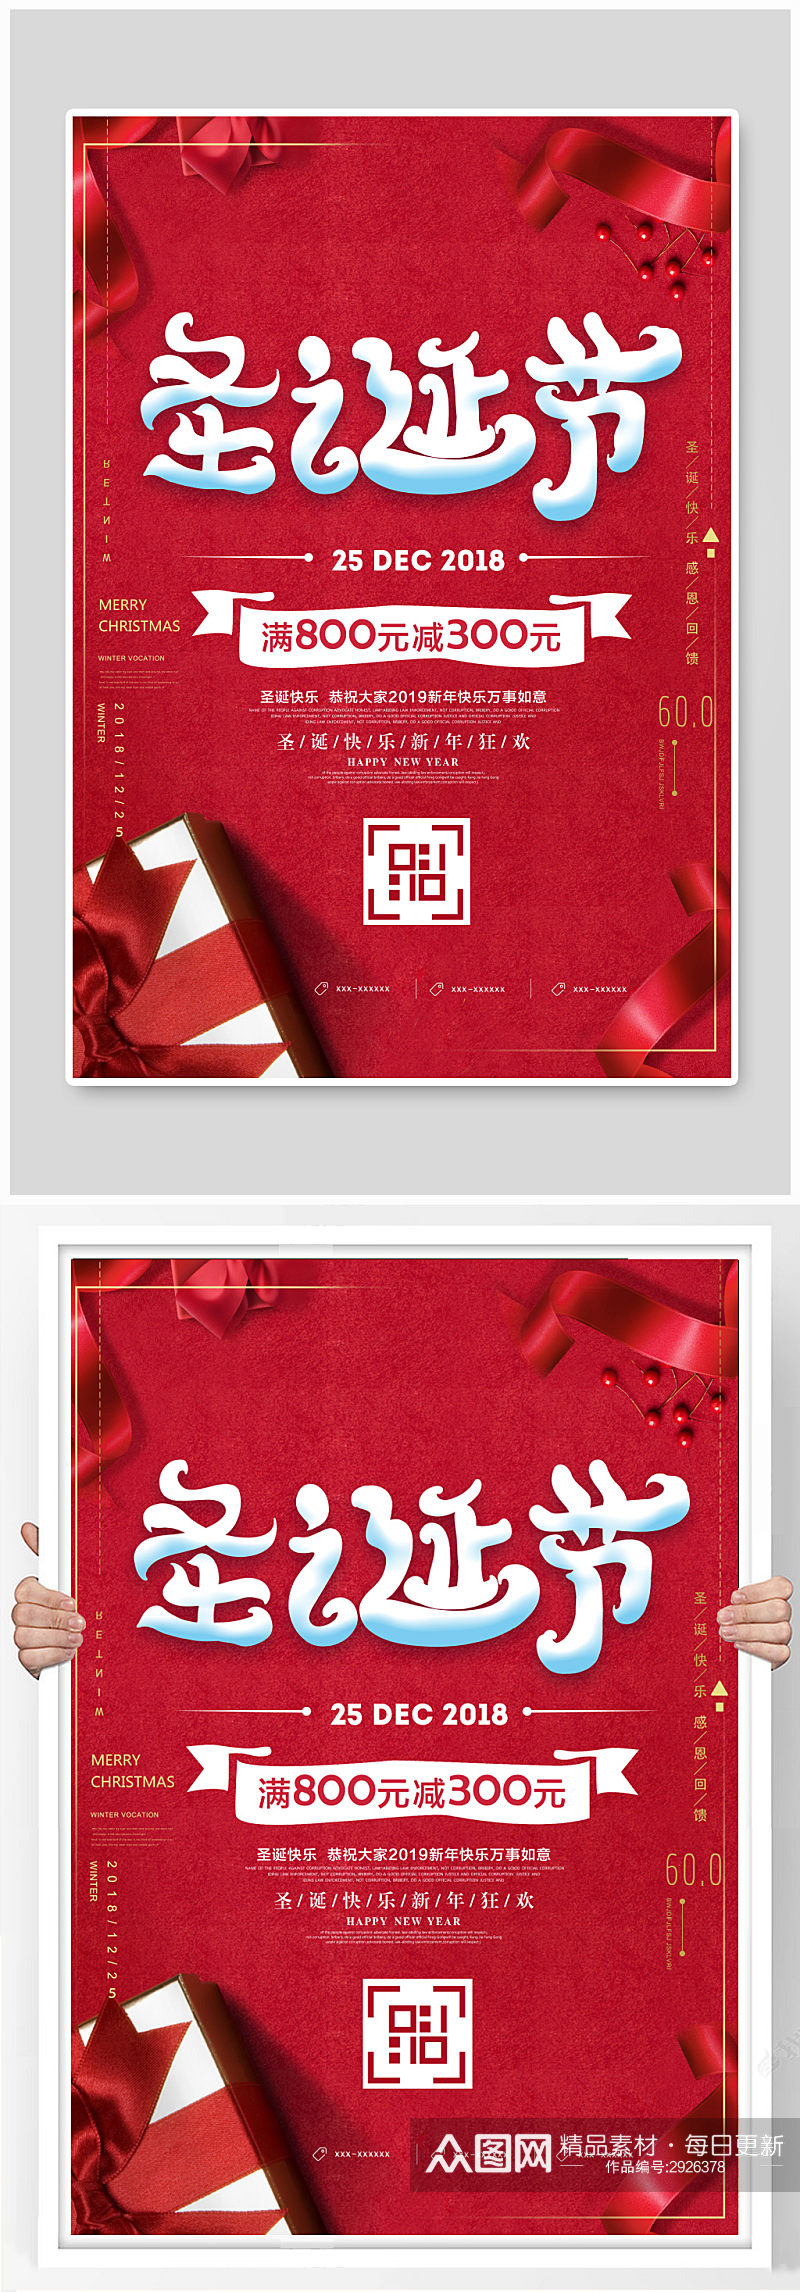 红色喜庆圣诞节促销活动海报素材